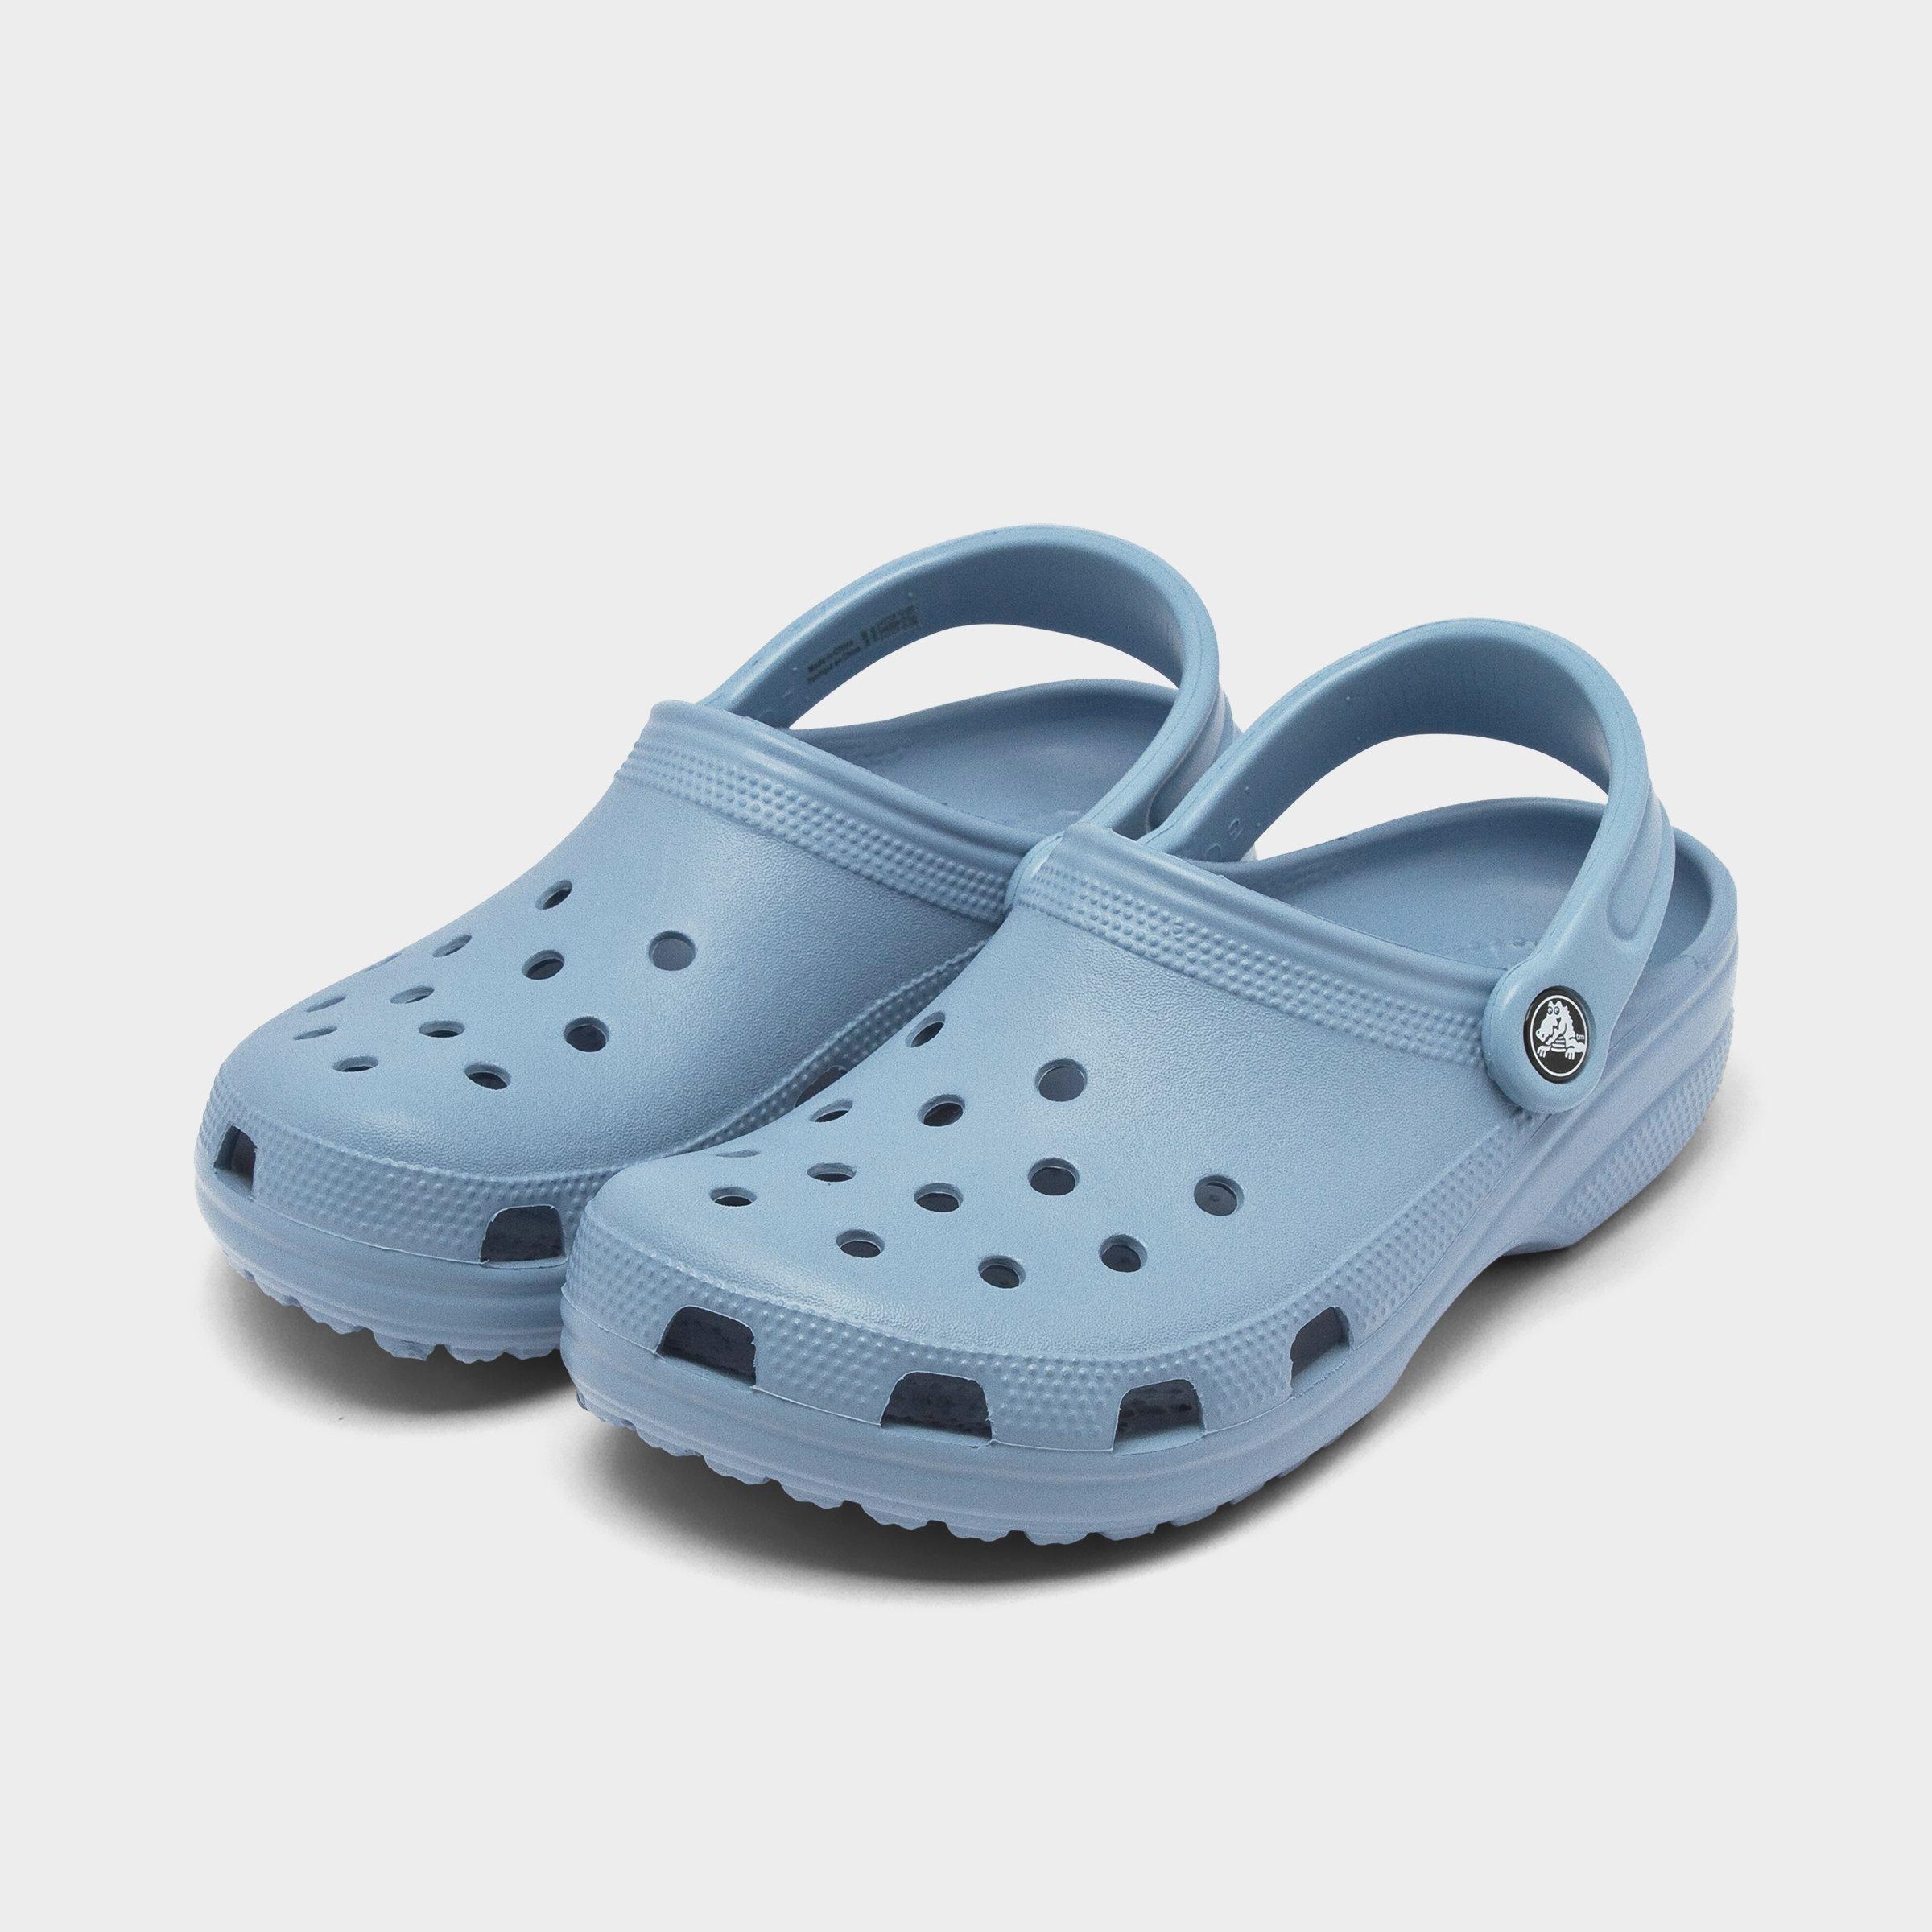 chambray blue tie dye crocs